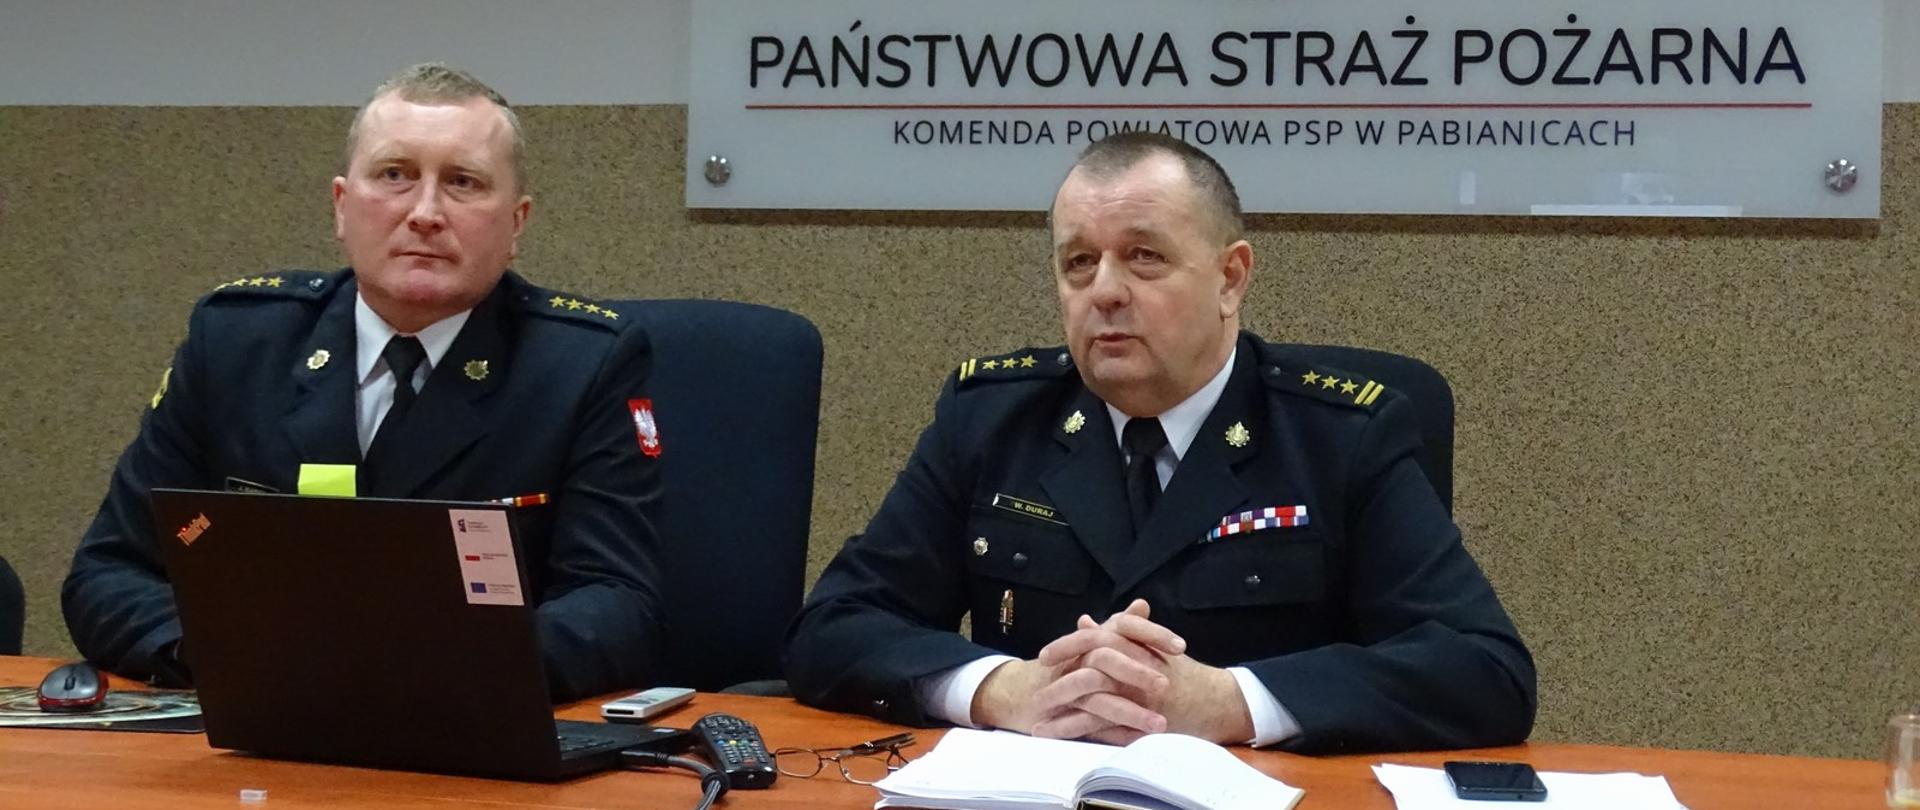 Na zdjęciu Komendant Powiatowy PSP w Pabianicach wraz Zastępcą podczas wideokonferencji dot. podsumowania działań realizowanych w 2021 r.